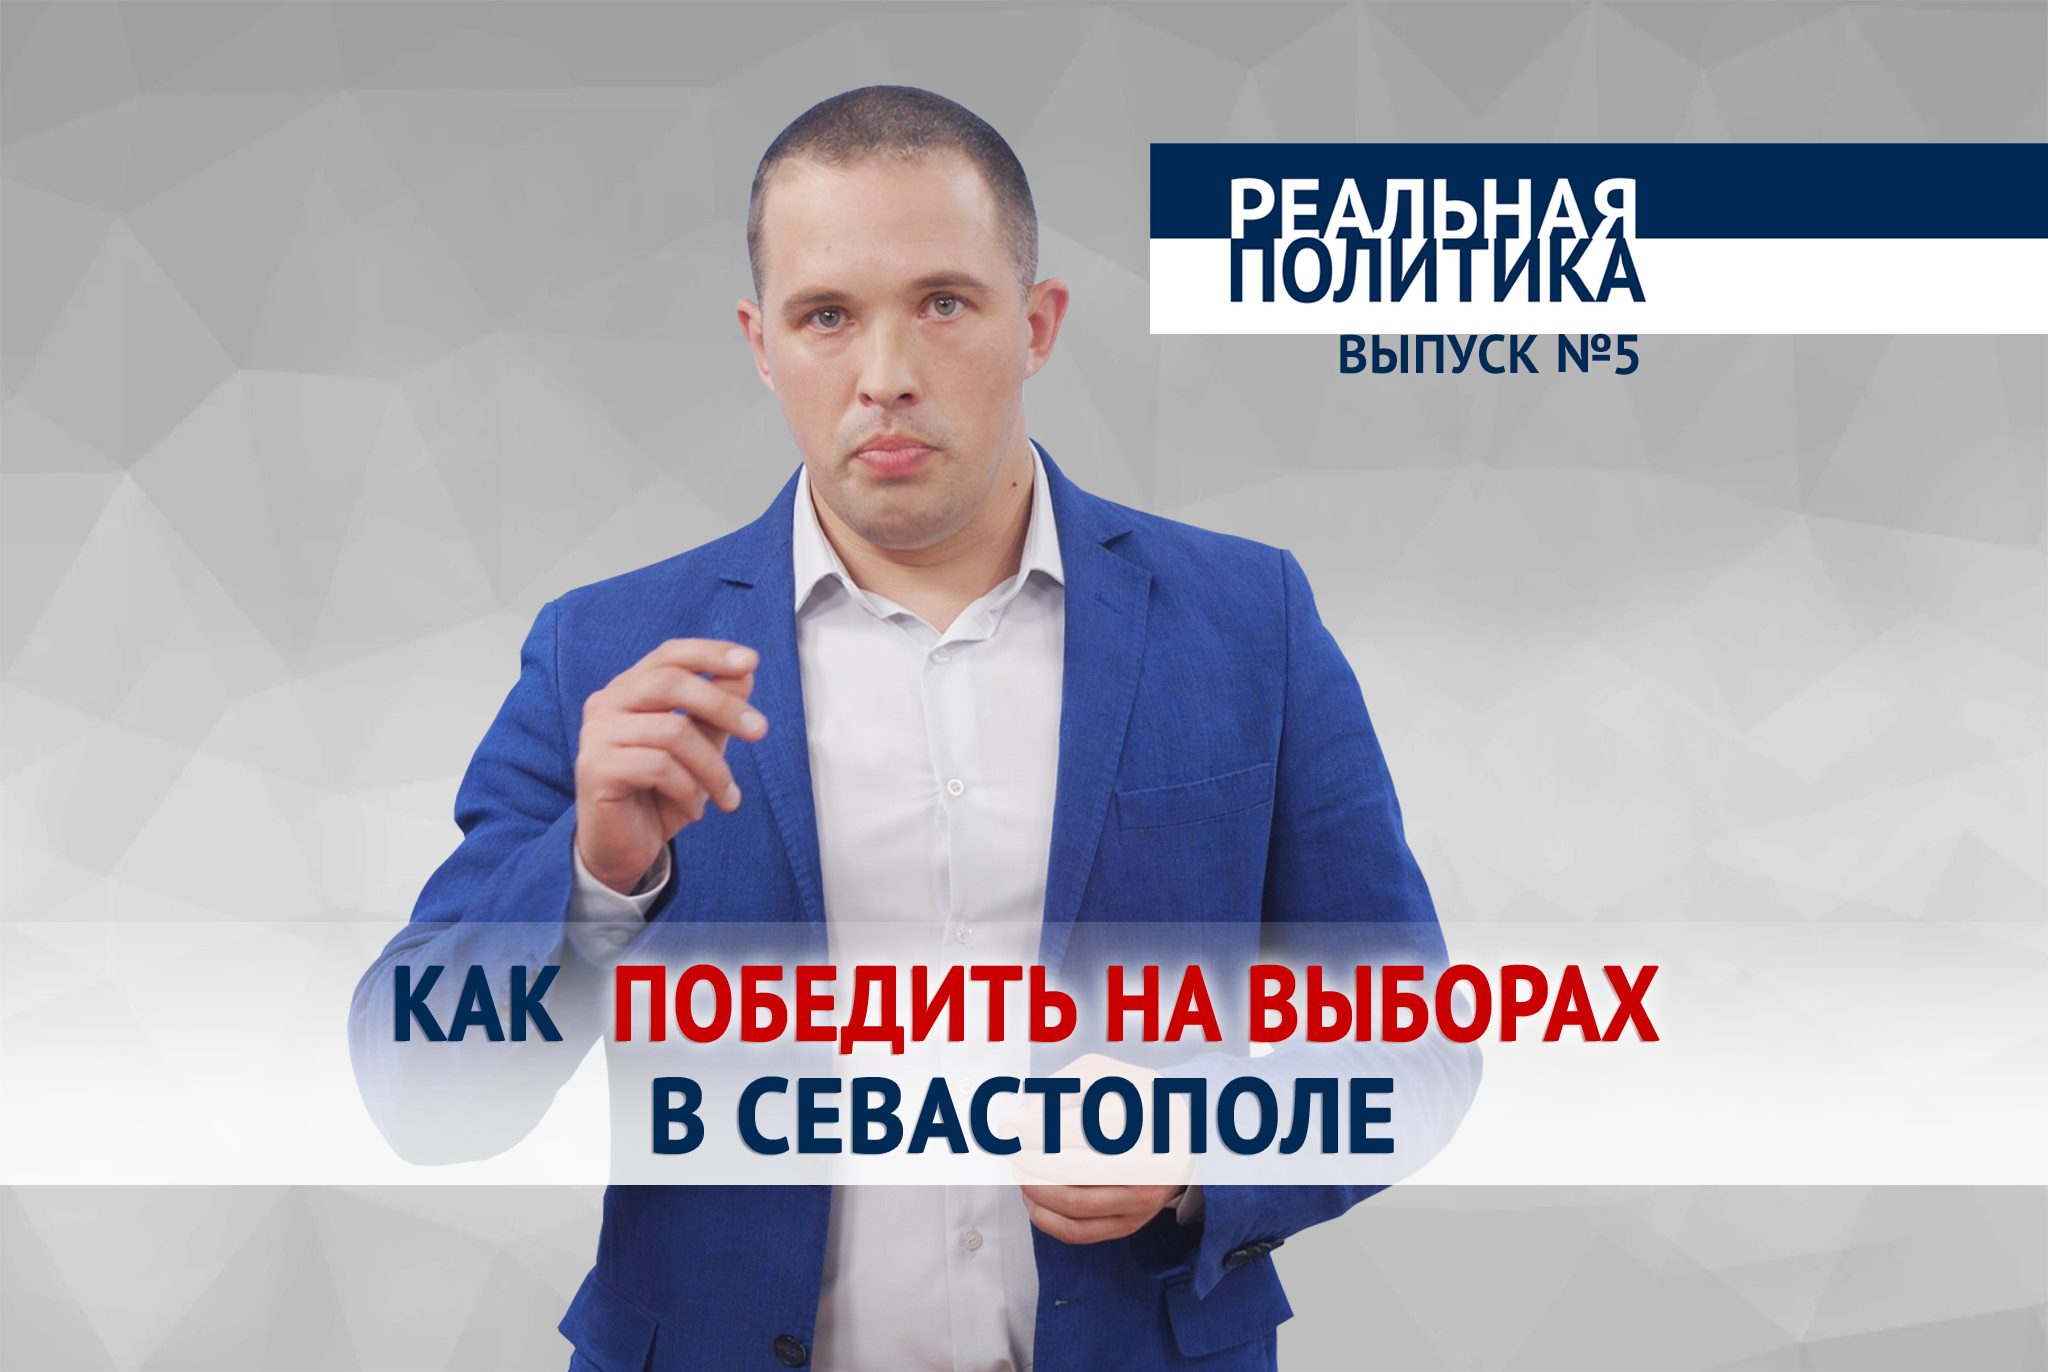 «Реальная политика». Как победить на выборах в Севастополе